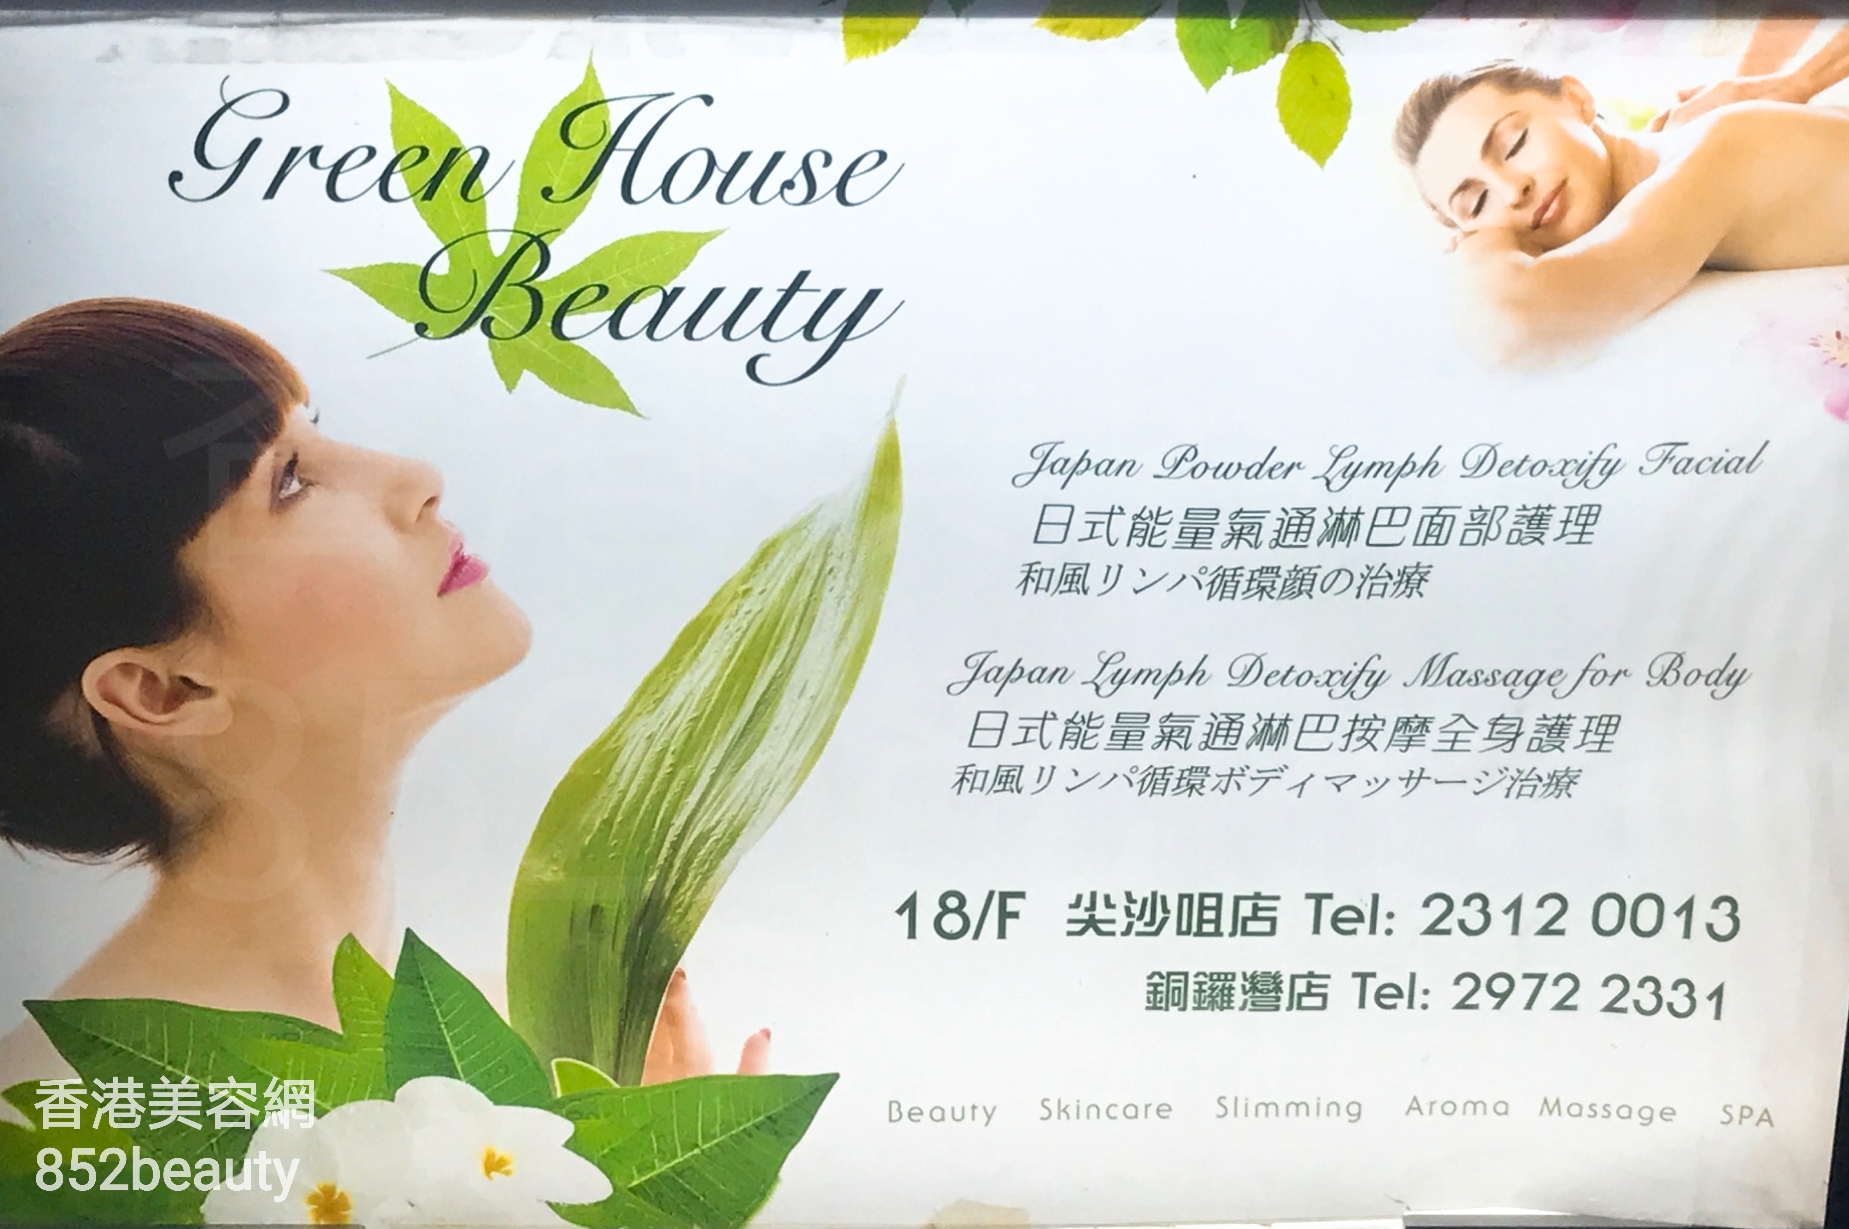 香港美容網 Hong Kong Beauty Salon 美容院 / 美容師: Green House Beauty (尖沙咀店)